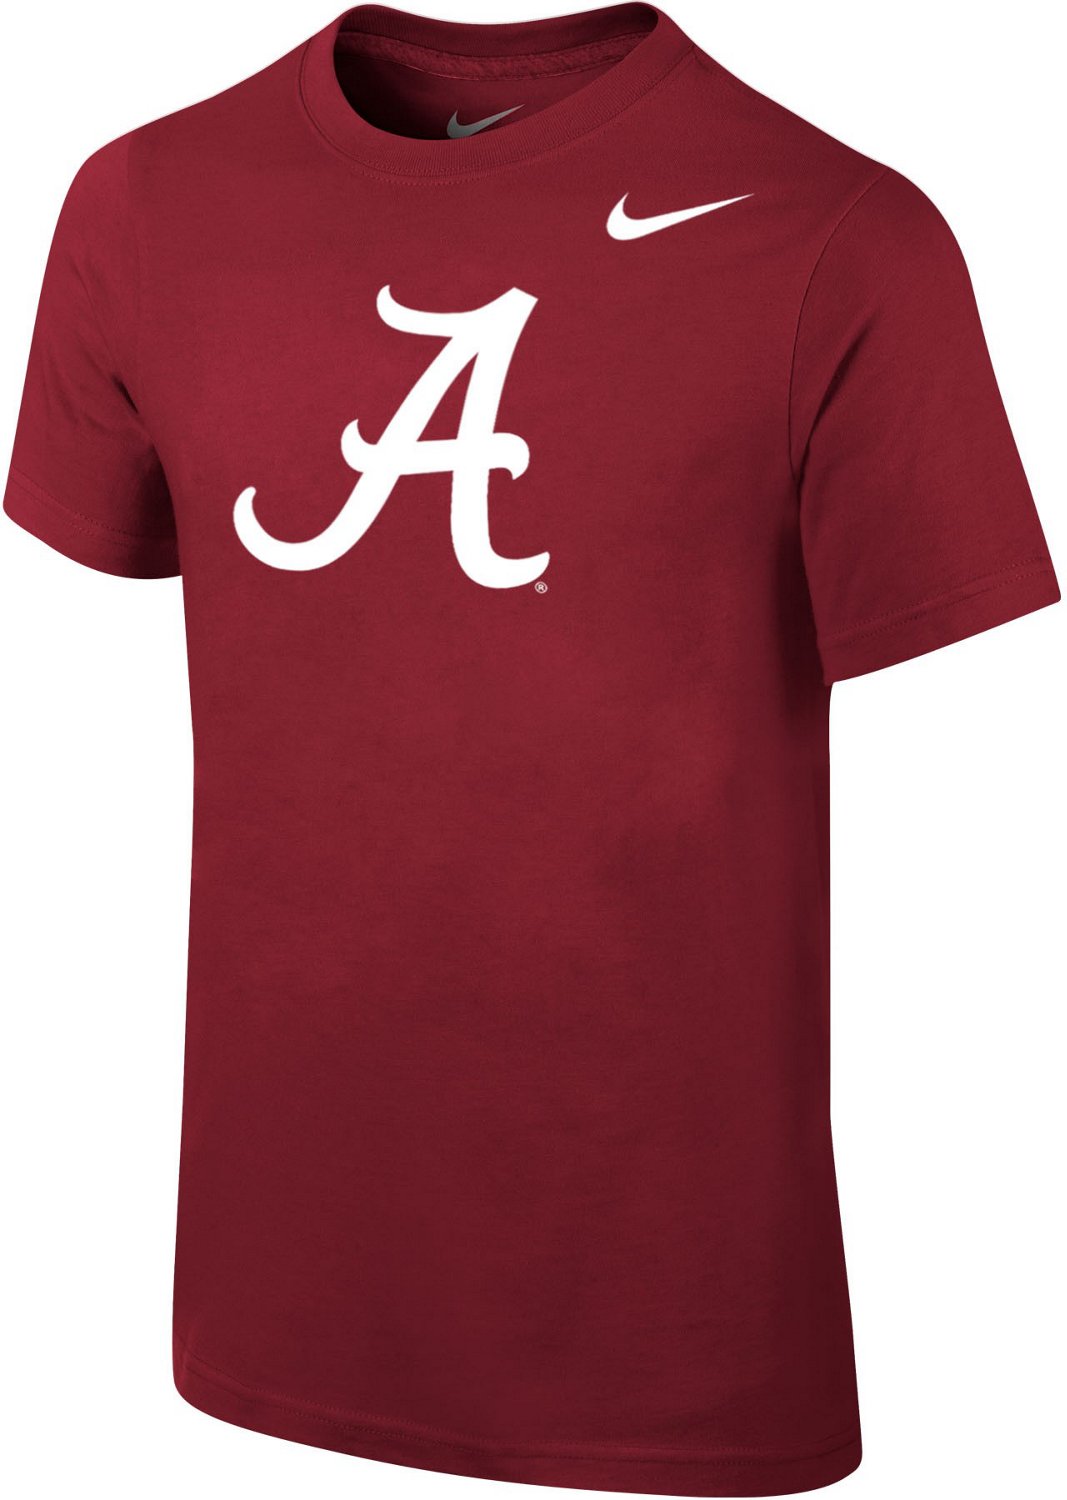 Nike Boys' University of Alabama Logo T-shirt | Academy